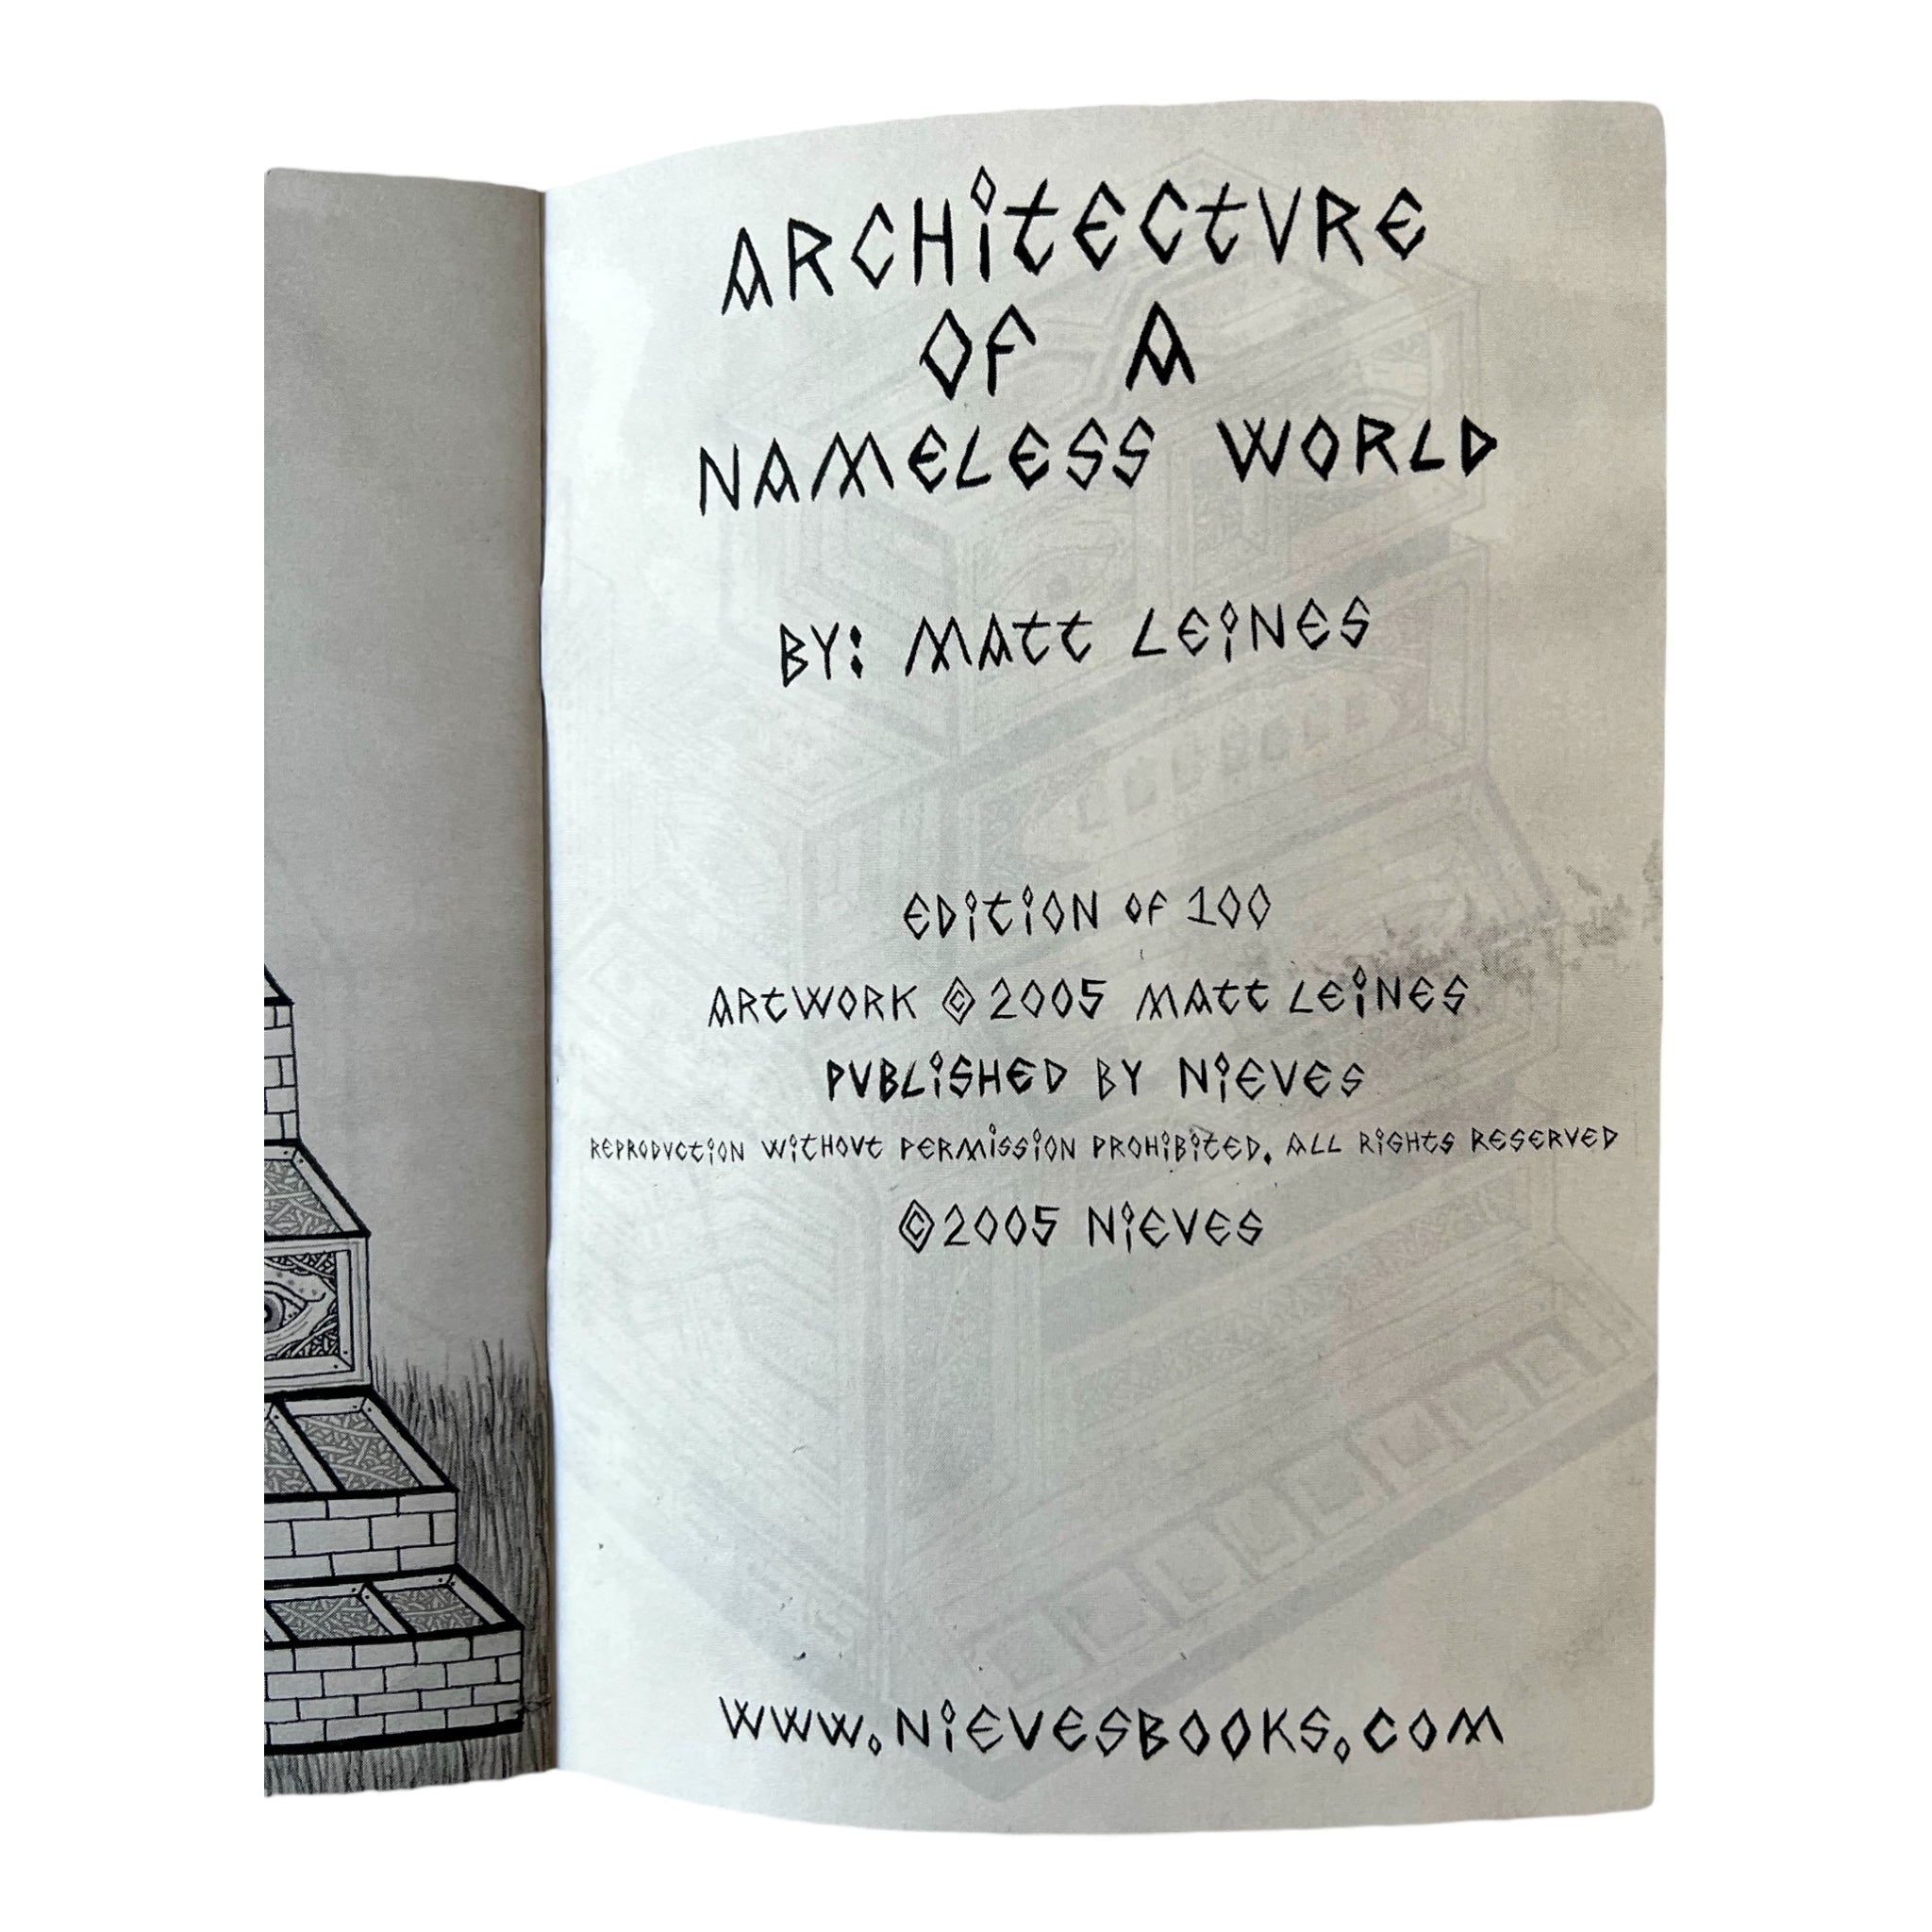 Matt Leines, Architecture of a Nameless World, 2005